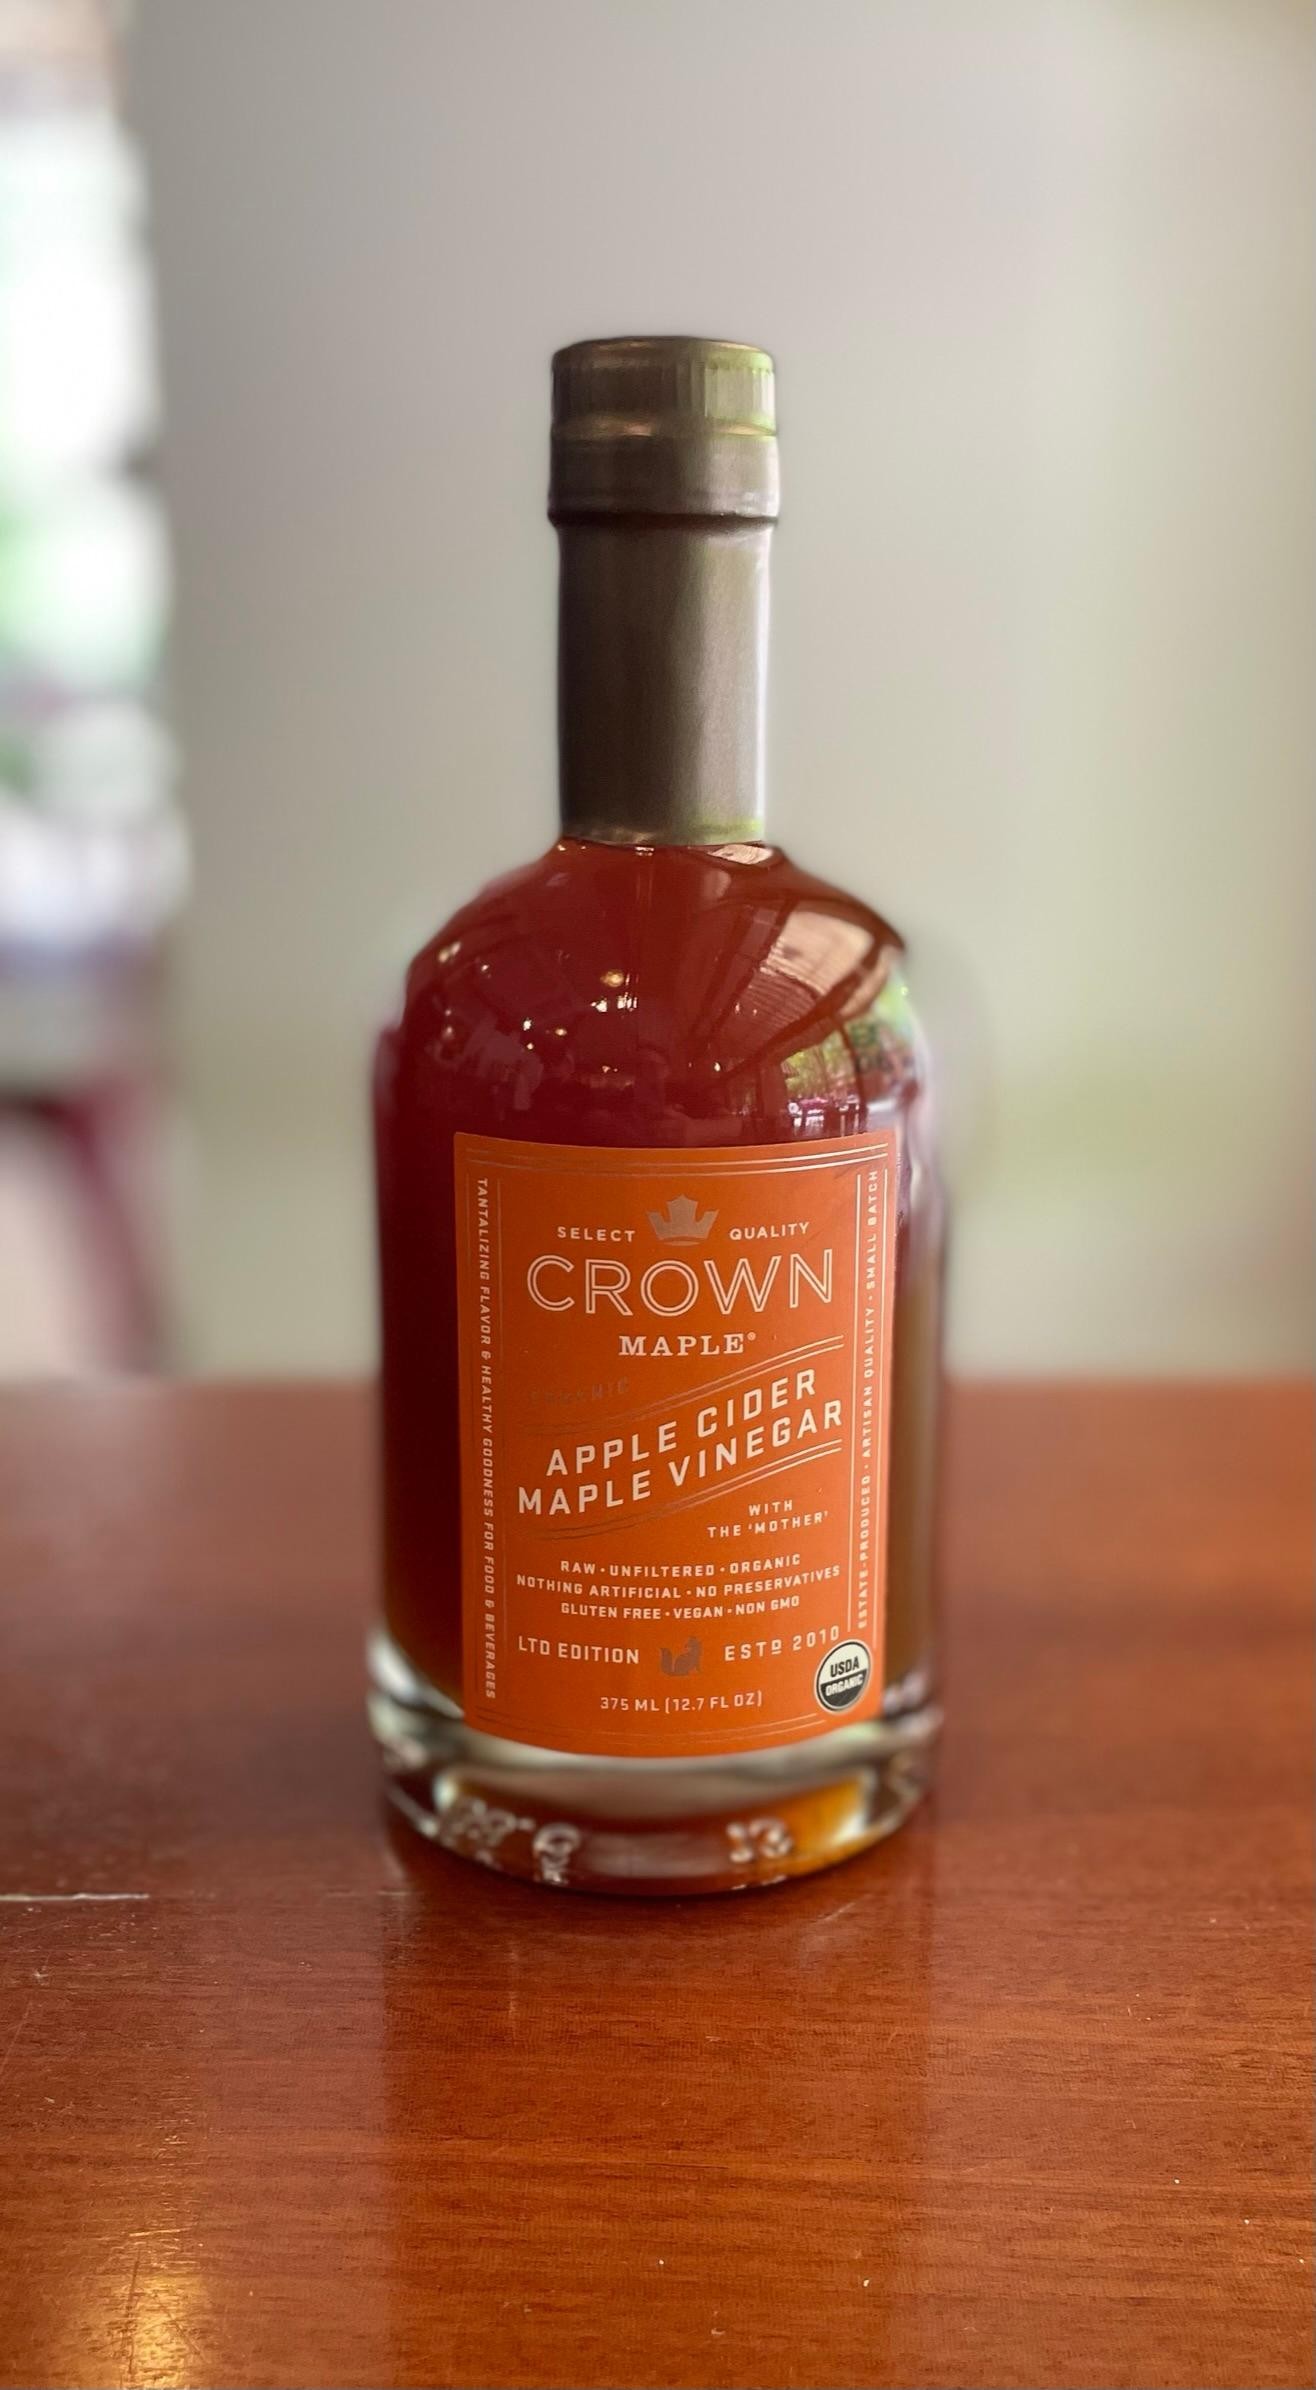 Crown Maple Apple Cider Maple Vinegar